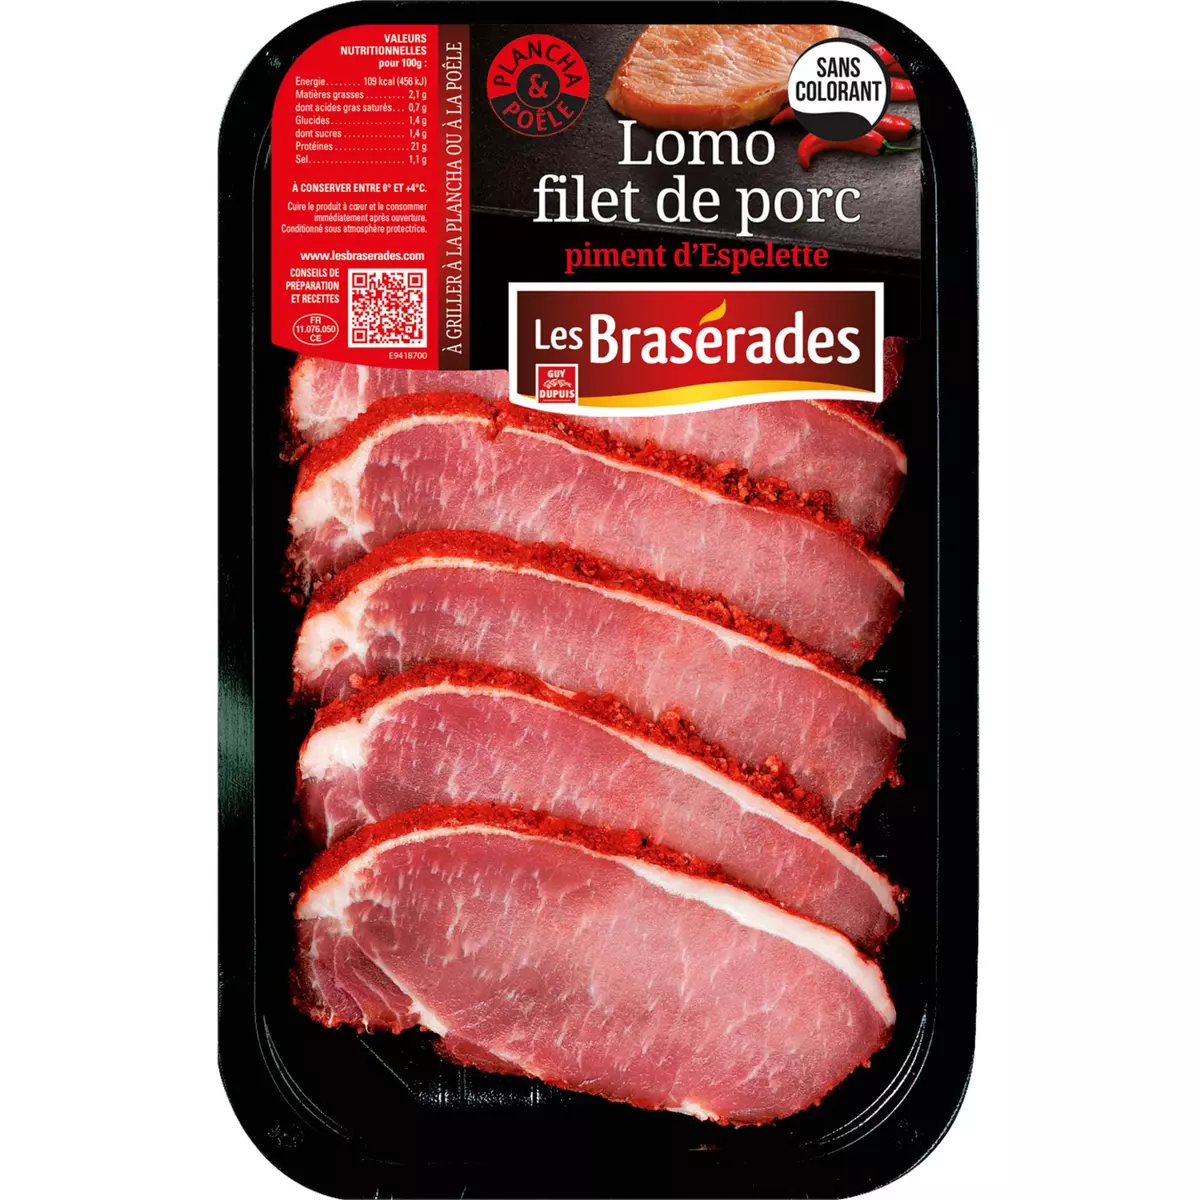 LES BRASERADES Lomo filets de porc au piment d'Espelette 300g